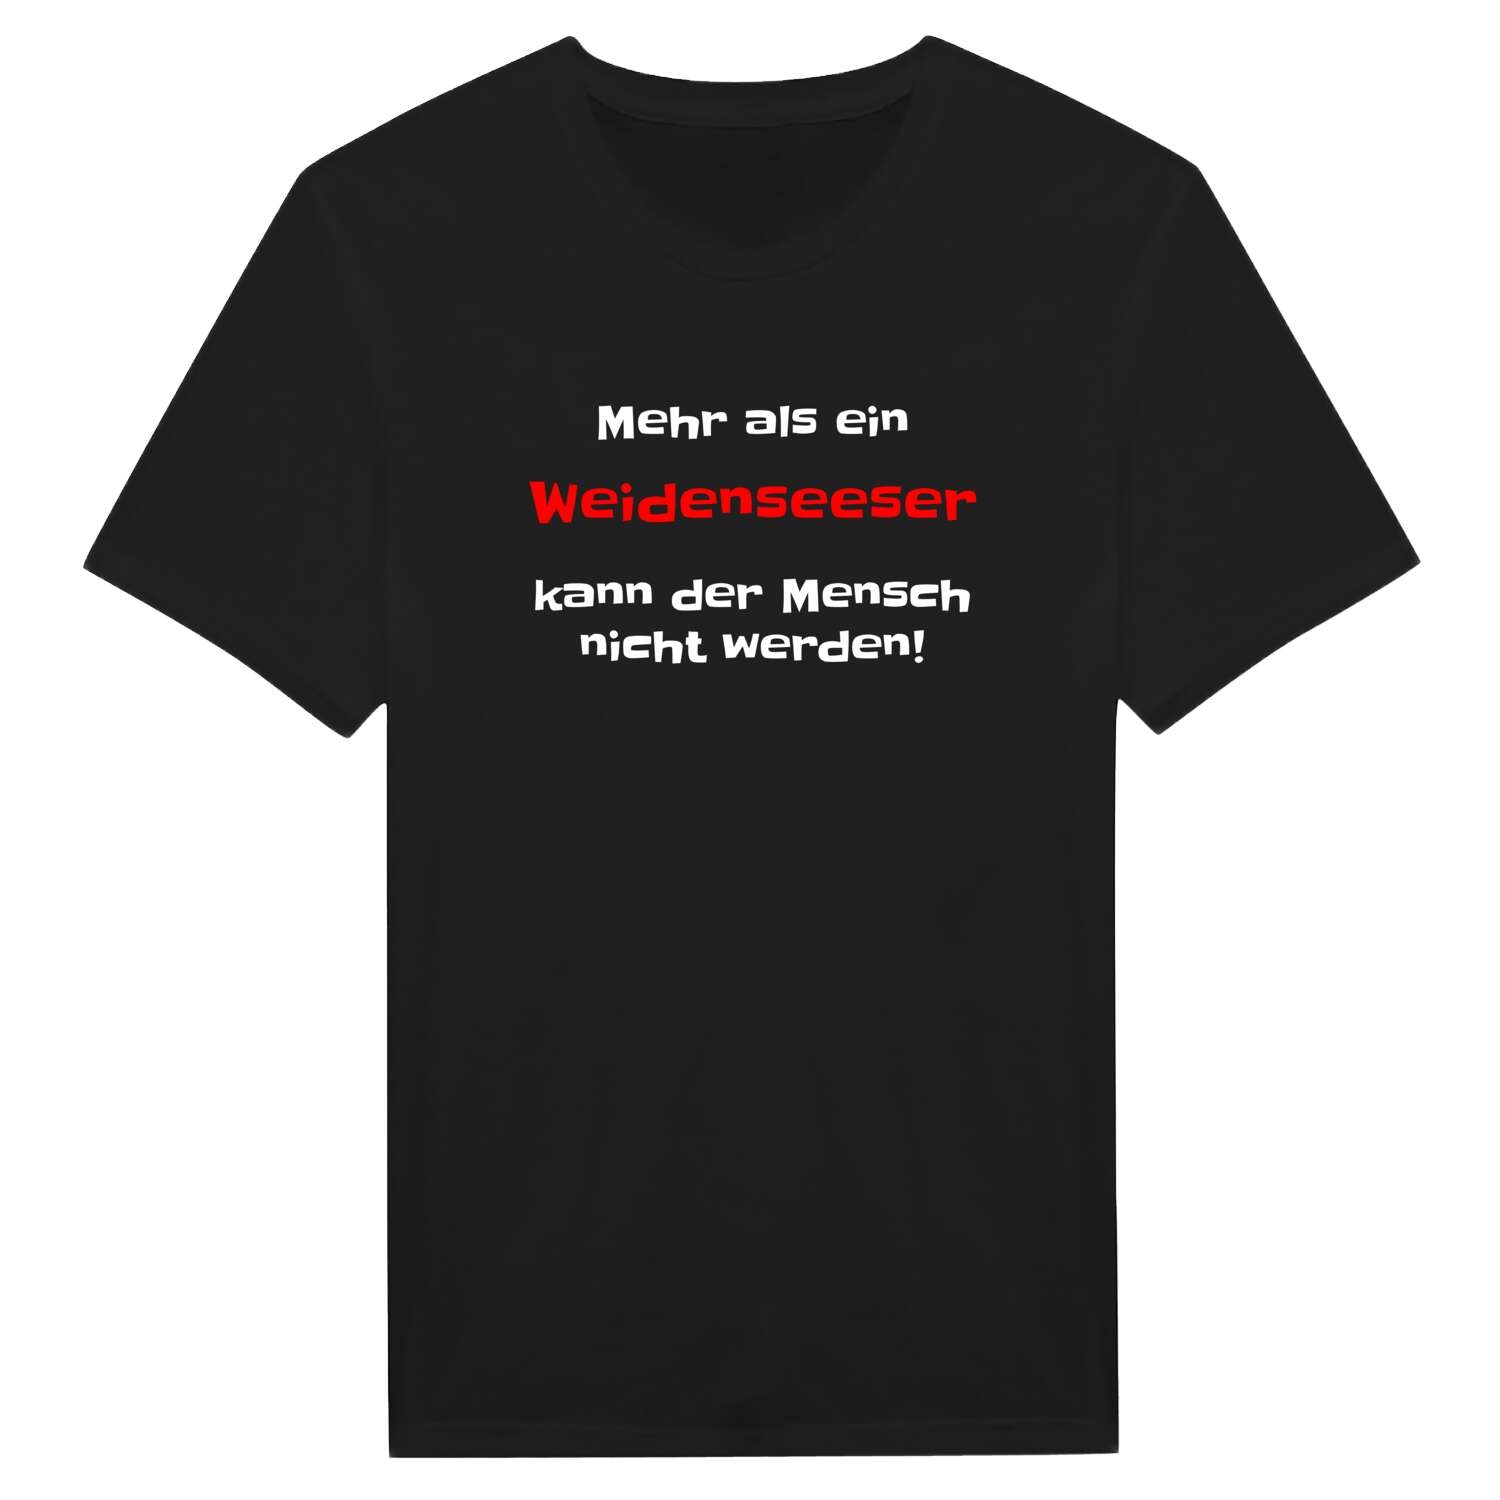 Weidensees T-Shirt »Mehr als ein«